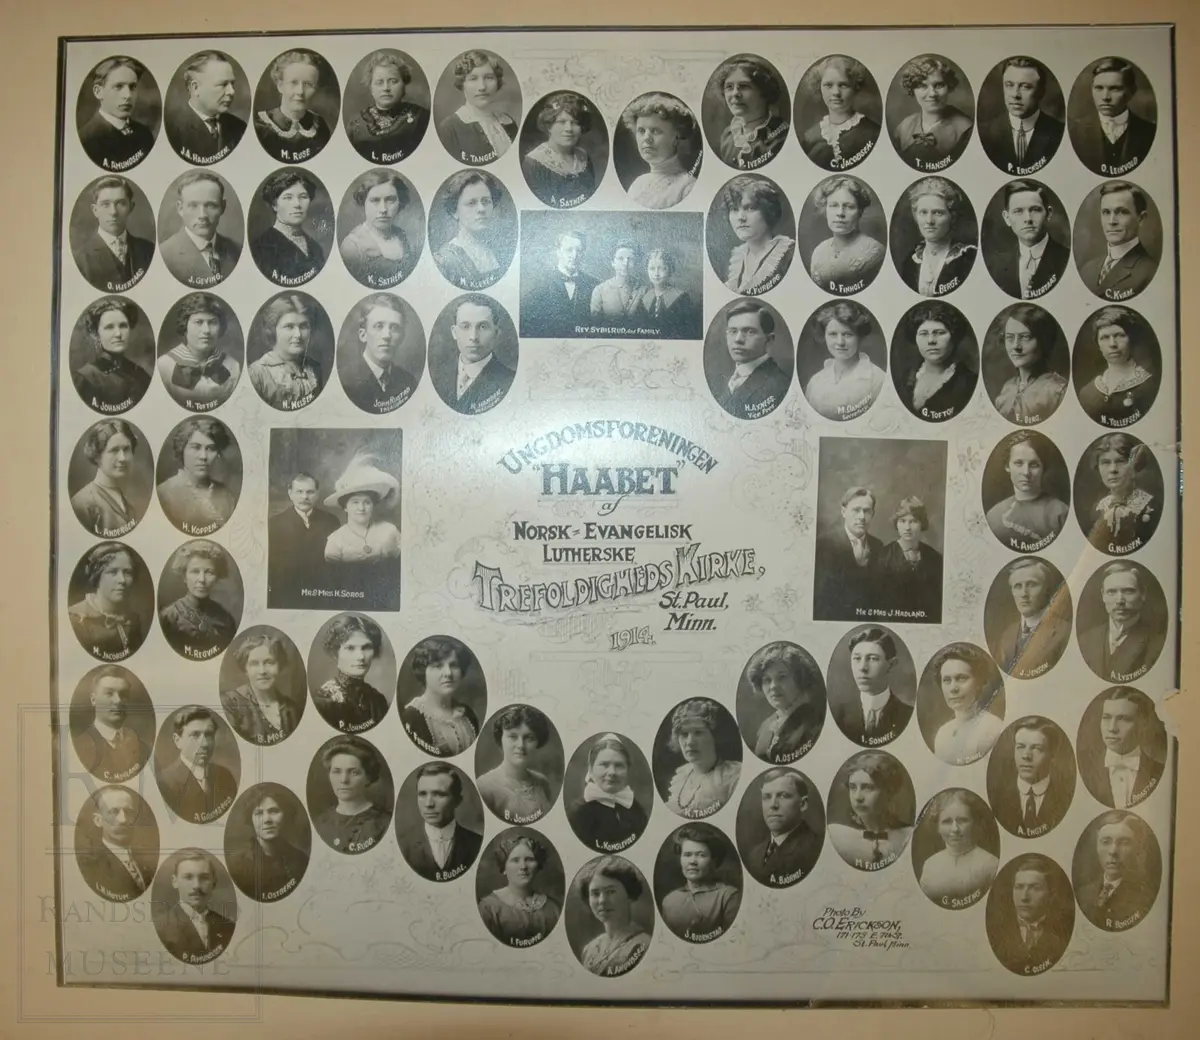 Ungdomsforeninge Haabet av Norsk-evangelisk-lutherske Trefoldigheds kirke, St. Paul, Minnesota 1914. Portretter av foreningens medlemmer.